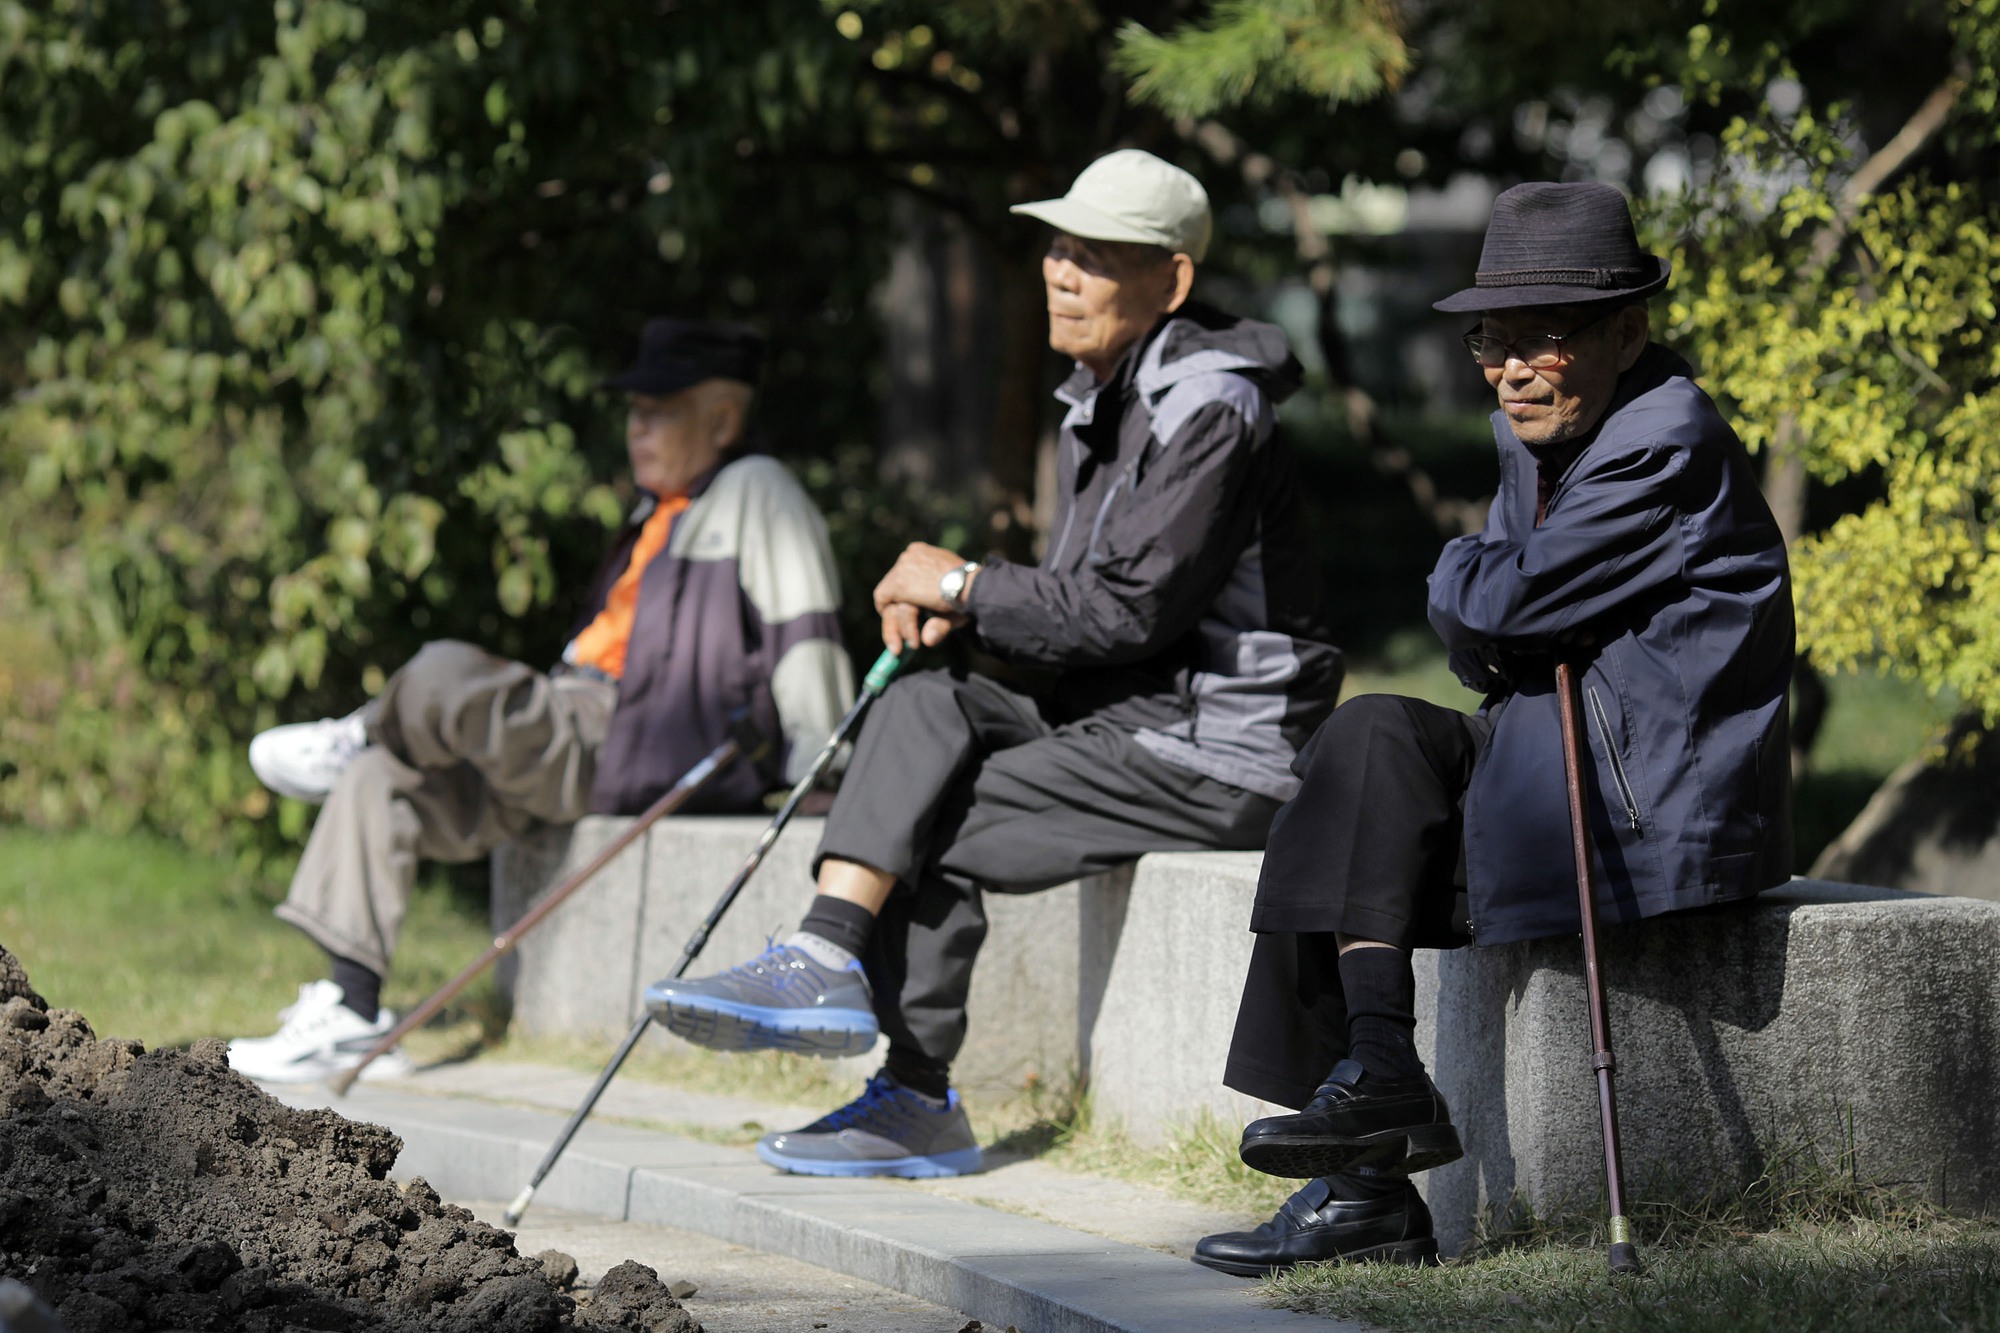 Hàn Quốc: Người về hưu cần 60 triệu đồng/tháng để sinh hoạt - Ảnh 1.